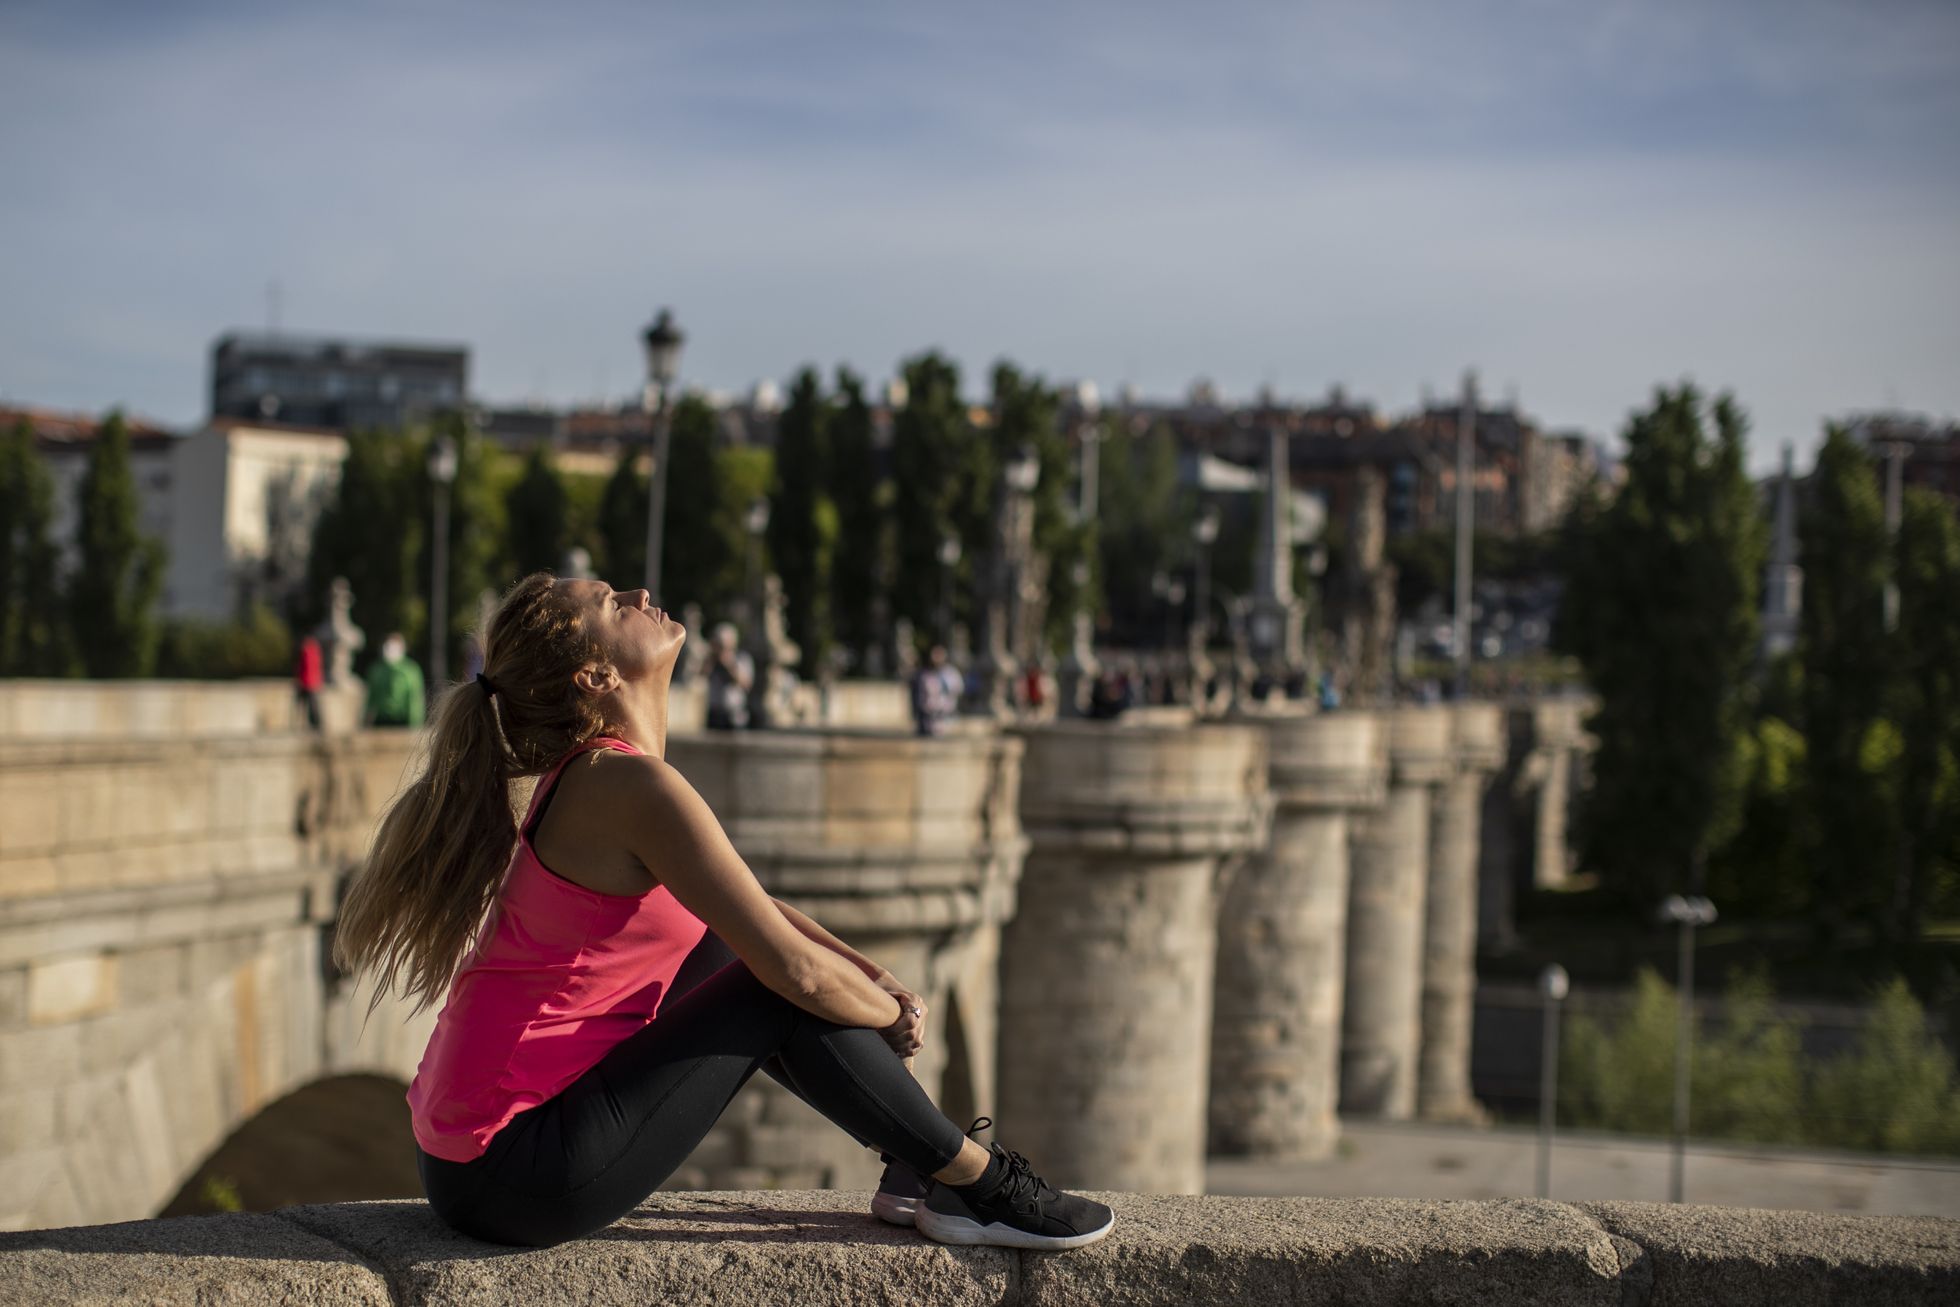 Теперь можно просто сидеть на солнышке и дышать воздухом, как делает эта девушка в Мадриде.